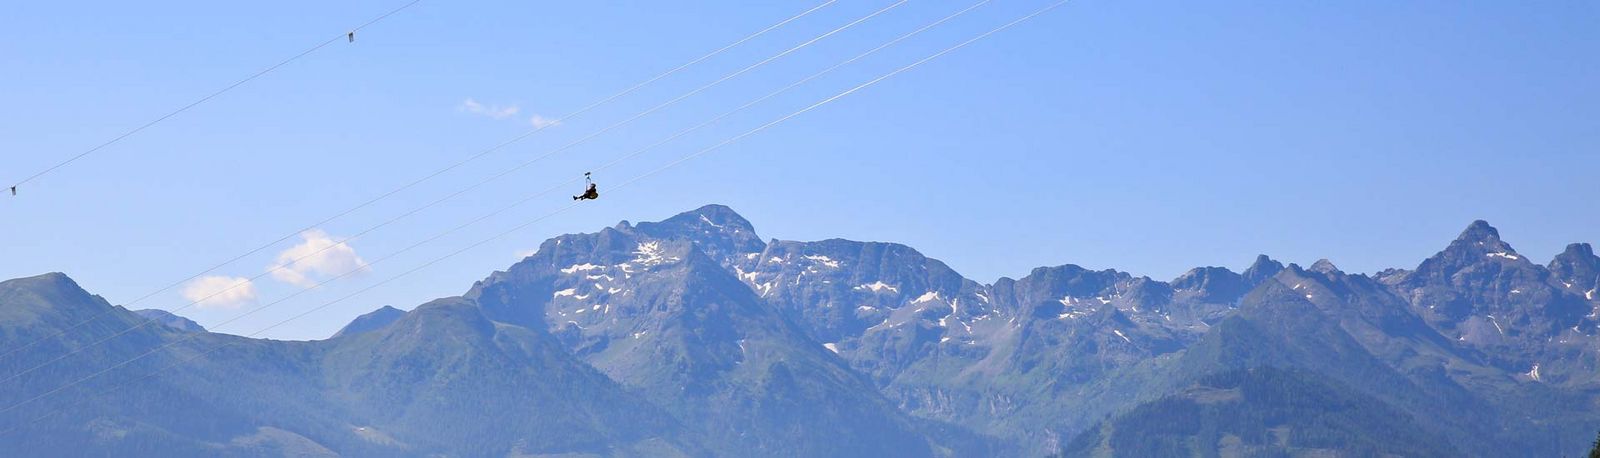 Seil-Gleitfluganlage in den Alpen